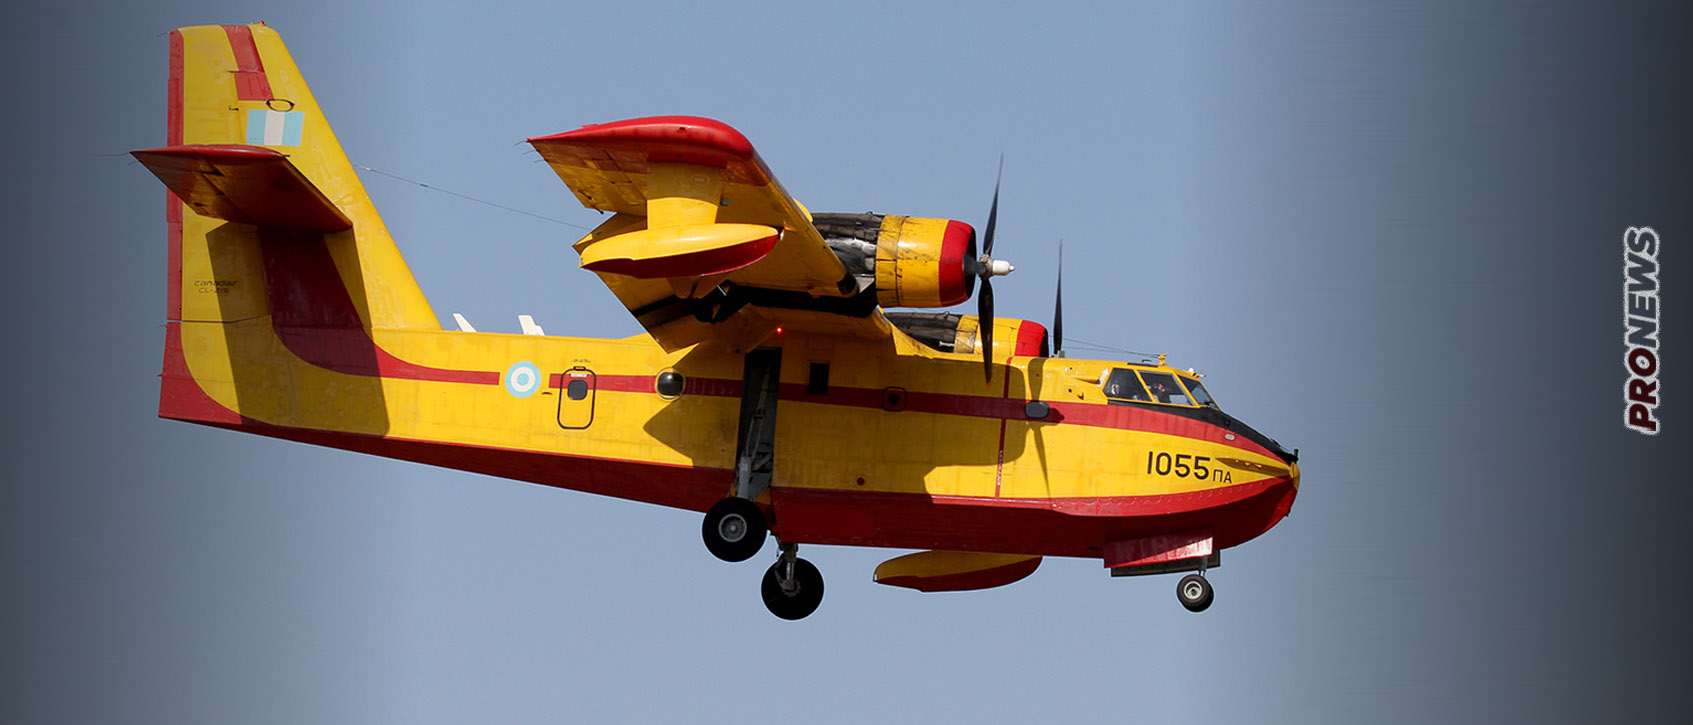 Συνετρίβη πυροσβεστικό αεροσκάφος CL-215 Canadair στην Κάρυστο